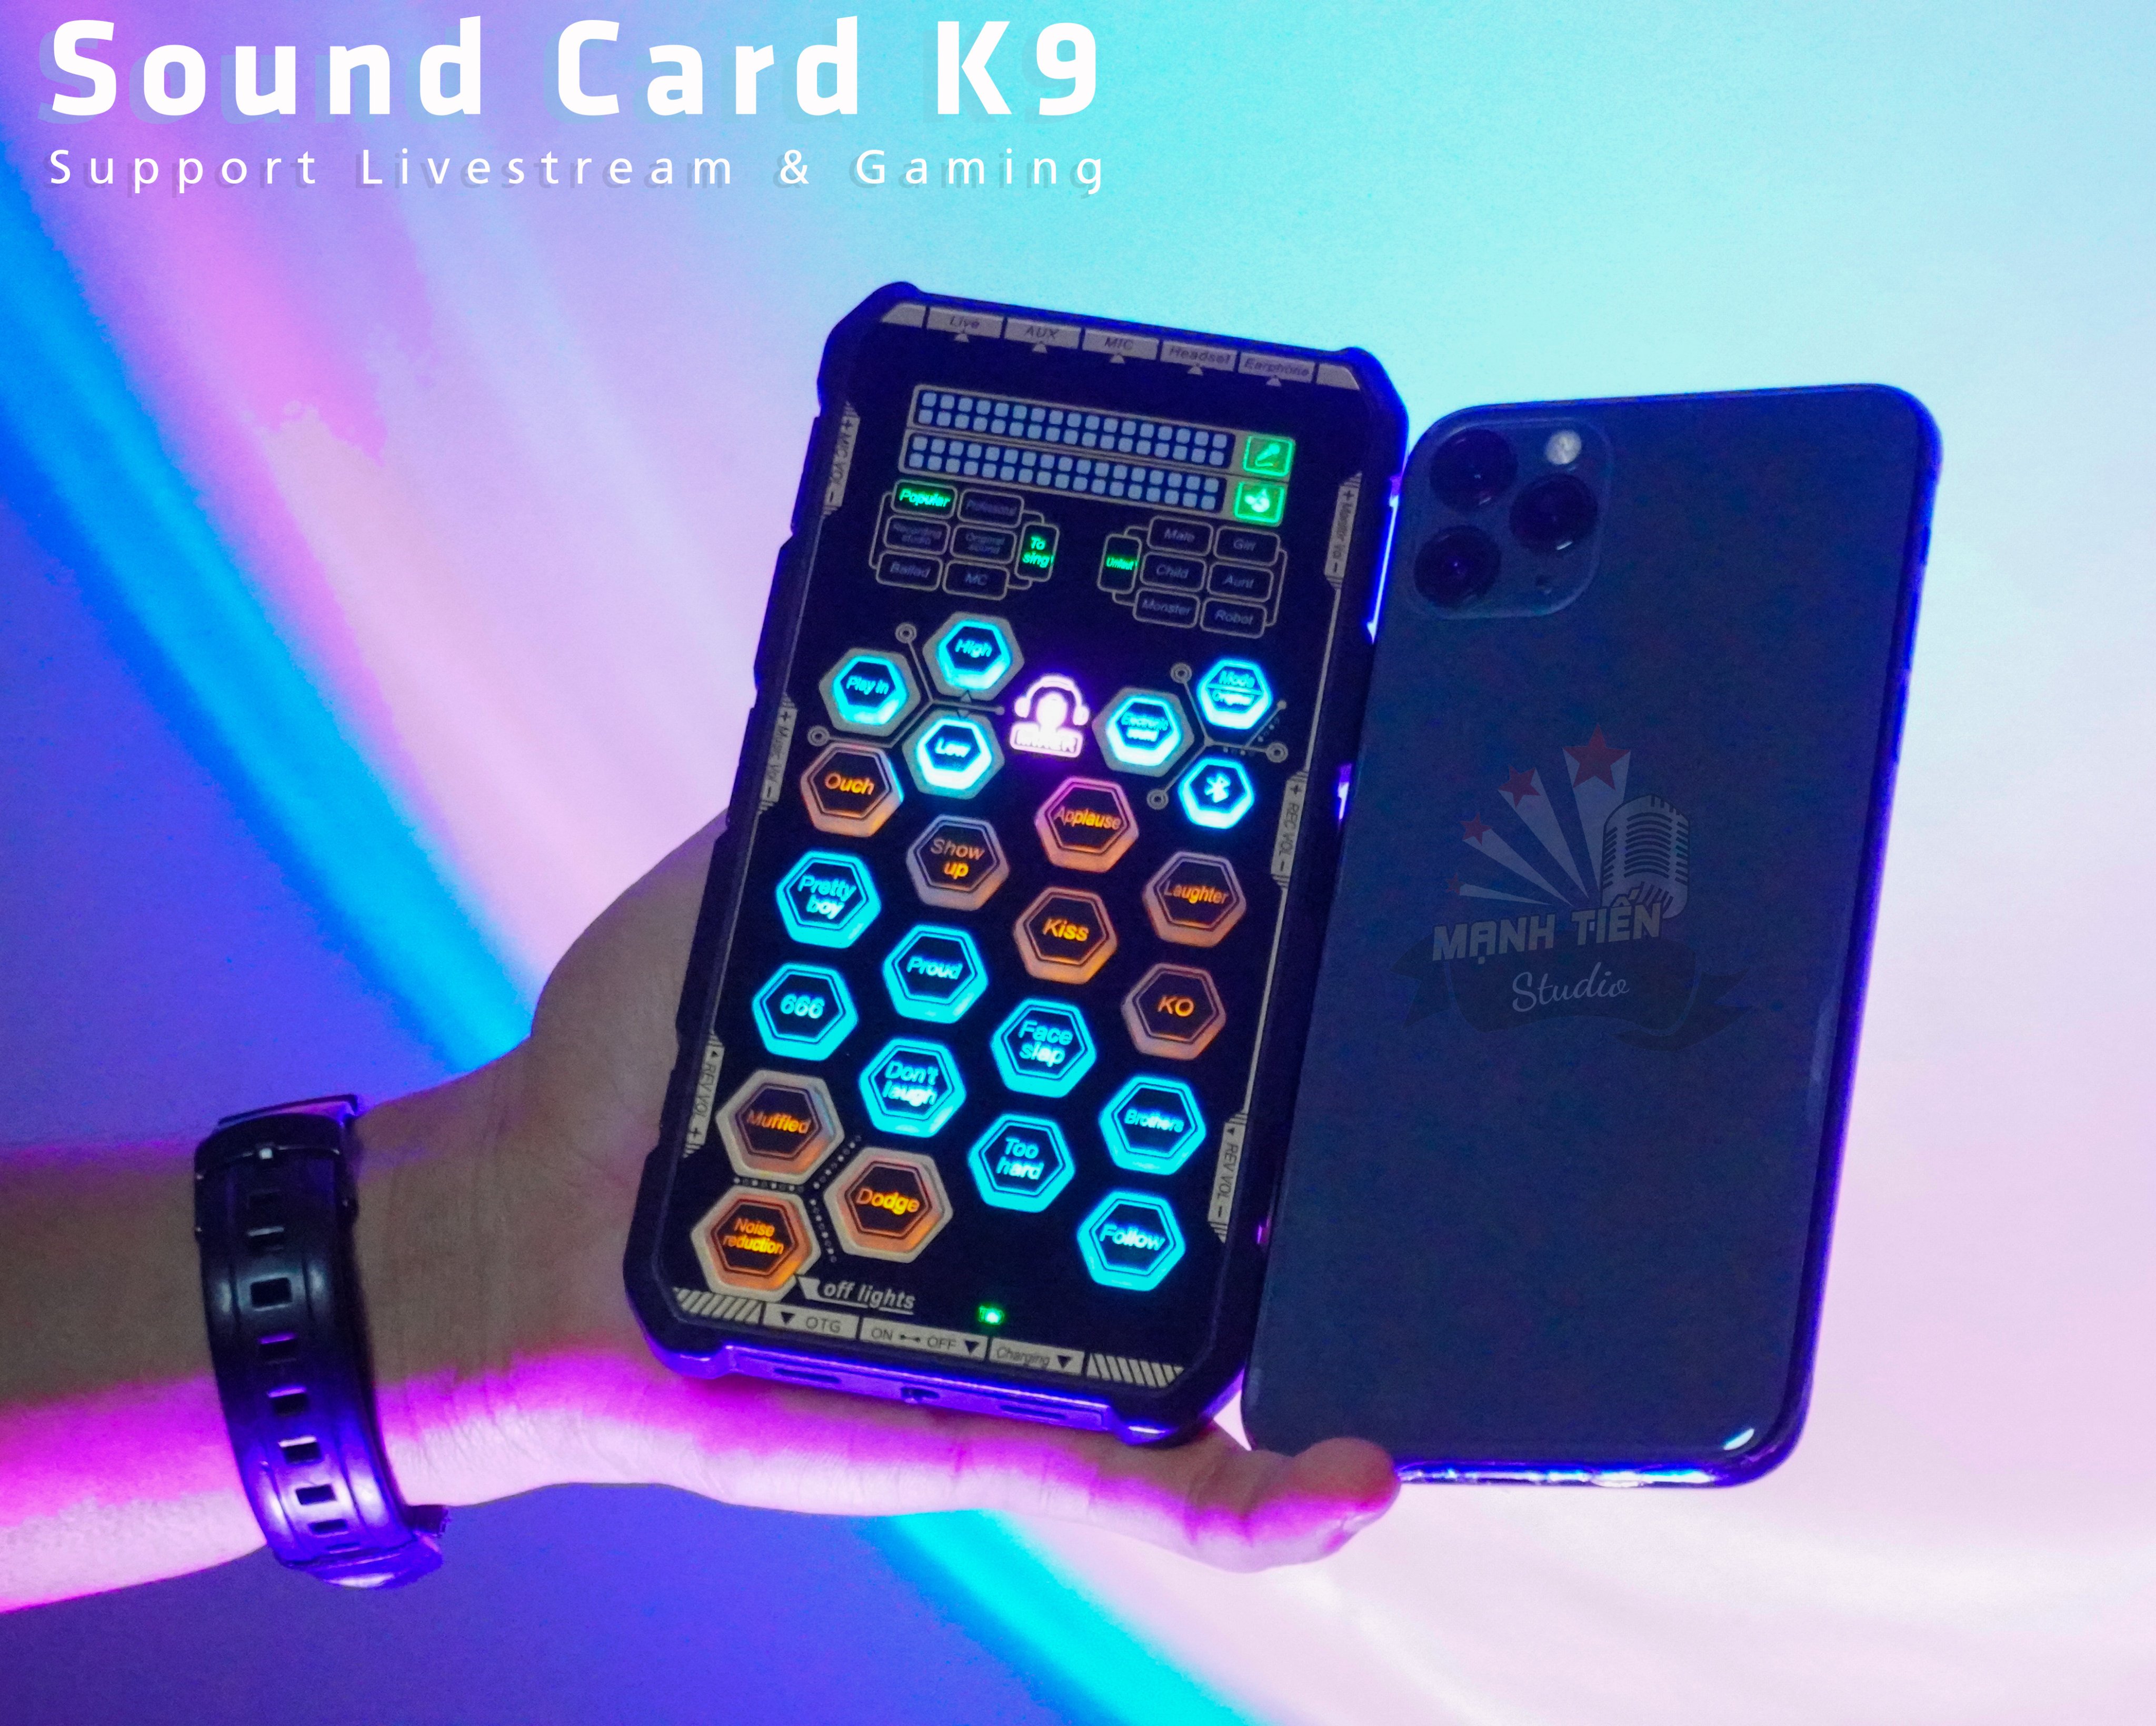 Sound card K9 mobile - Chơi game, thu âm, livestream, karaoke online, pk chỉ cần thêm tai nghe - Hỗ trợ auto tune đổi giọng, hiệu ứng vui nhộn - Bluetooth 5.0, giảm tiếng ồn, trang bị pin sạc - Kết nối dễ dàng với smartphone, máy tính, tablet...